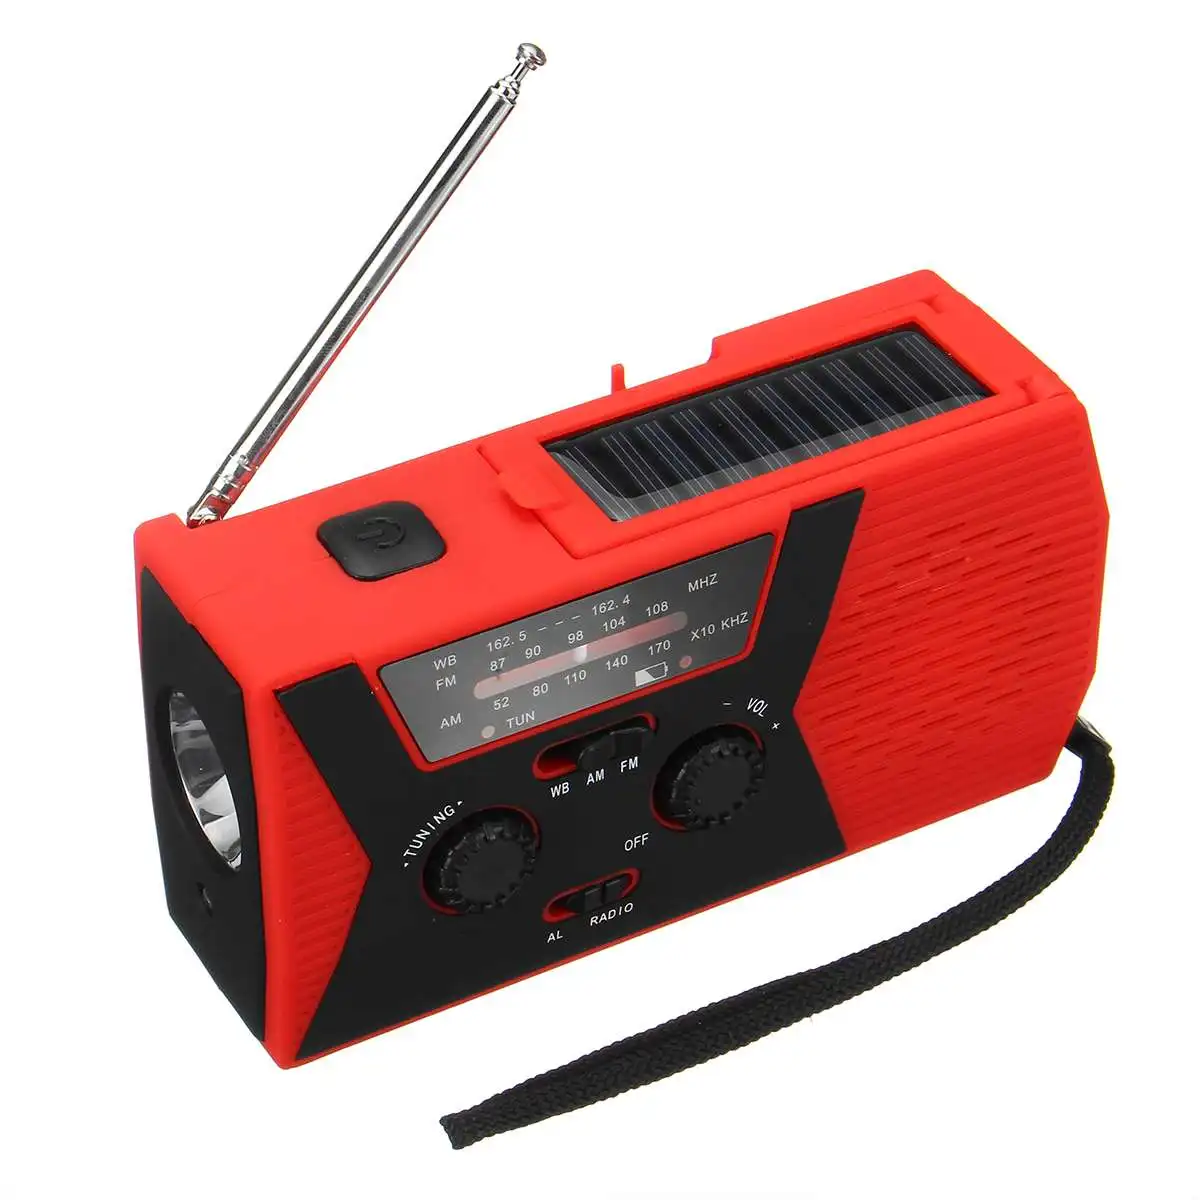 AM/FM/WB радио солнечное зарядное устройство, аварийное самопортативное Ручное Зарядное устройство, погодное зарядное устройство 2000 мАч